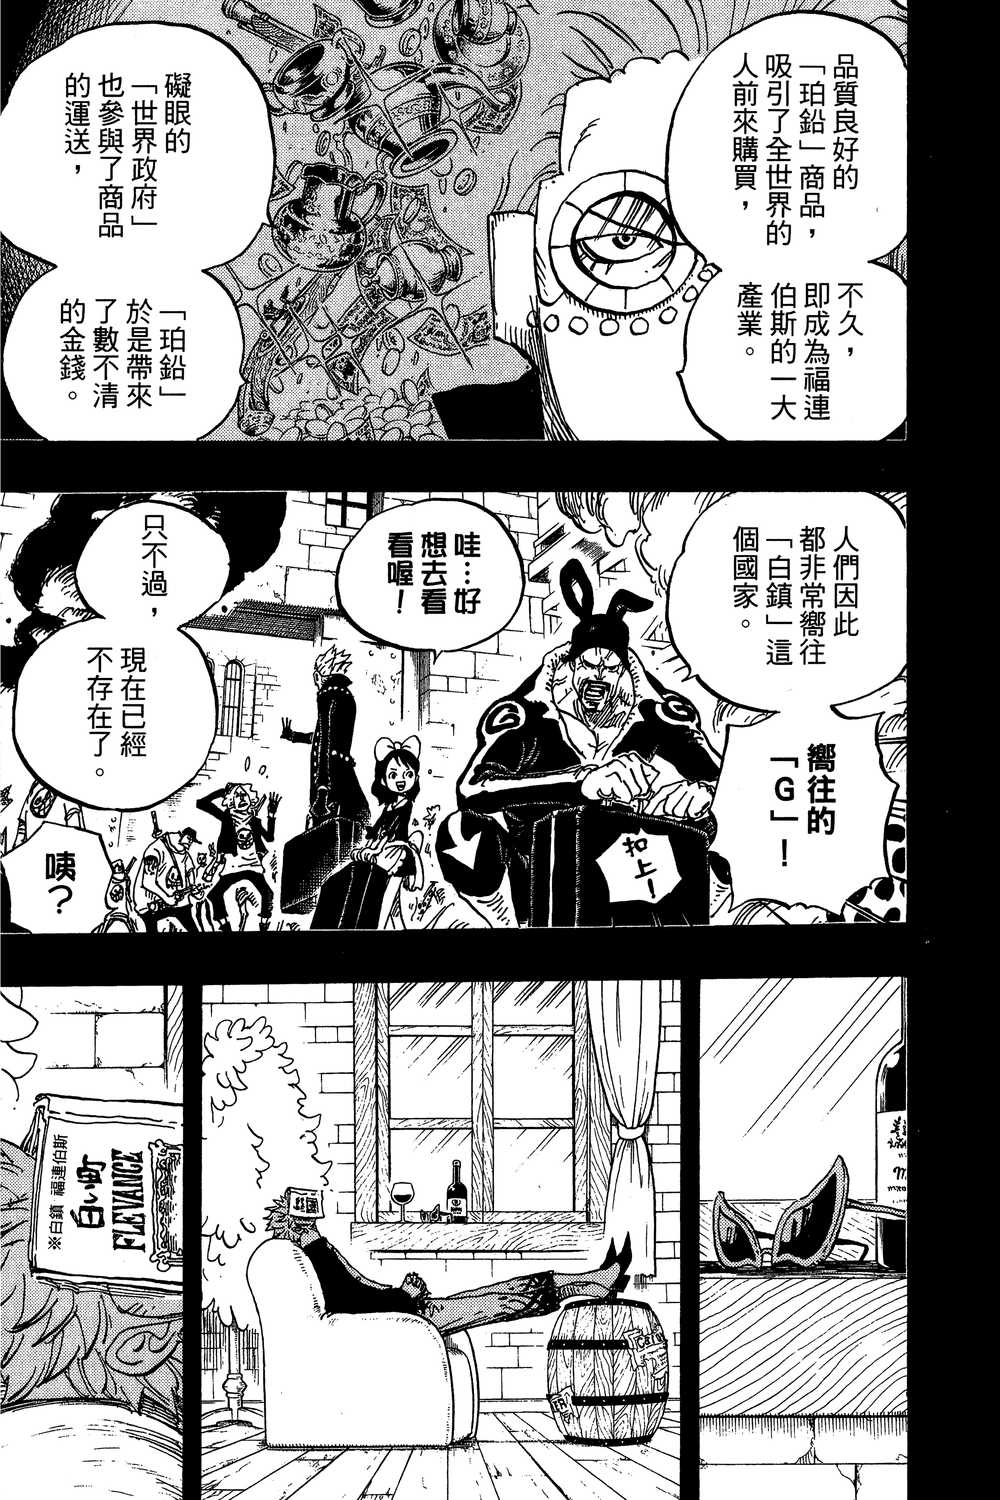 One Piece 海贼王 航海王 漫画东立版53 81 第76集 漫画db